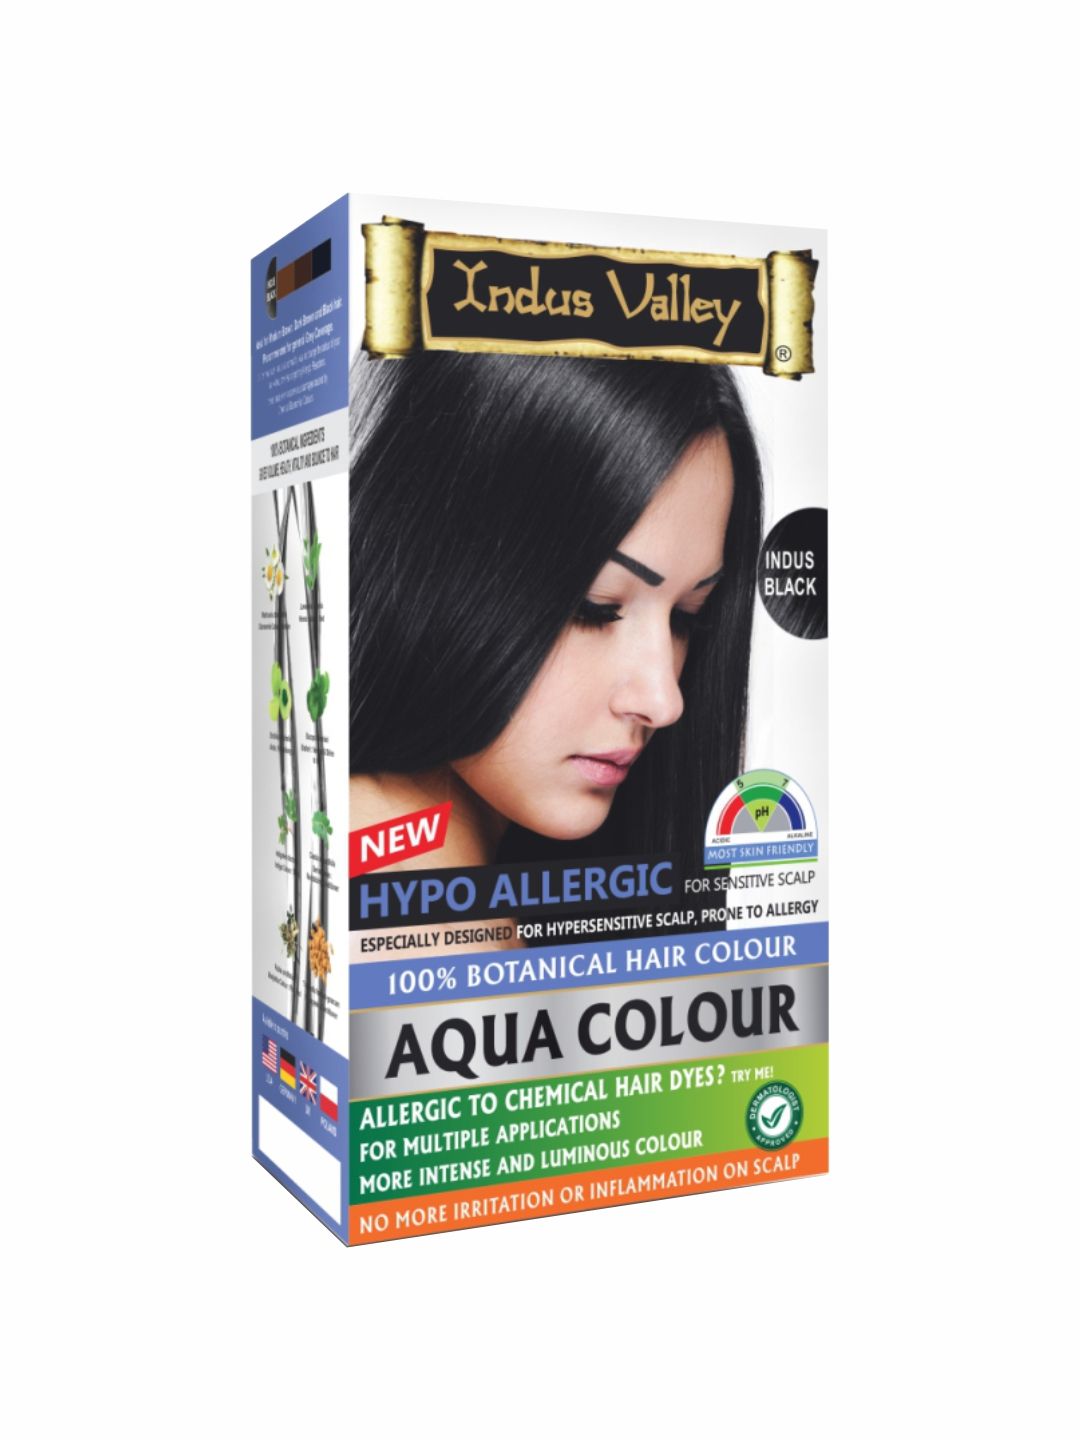 Indus Valley Hypo Allergic Aqua Black Hair Colour Price in India